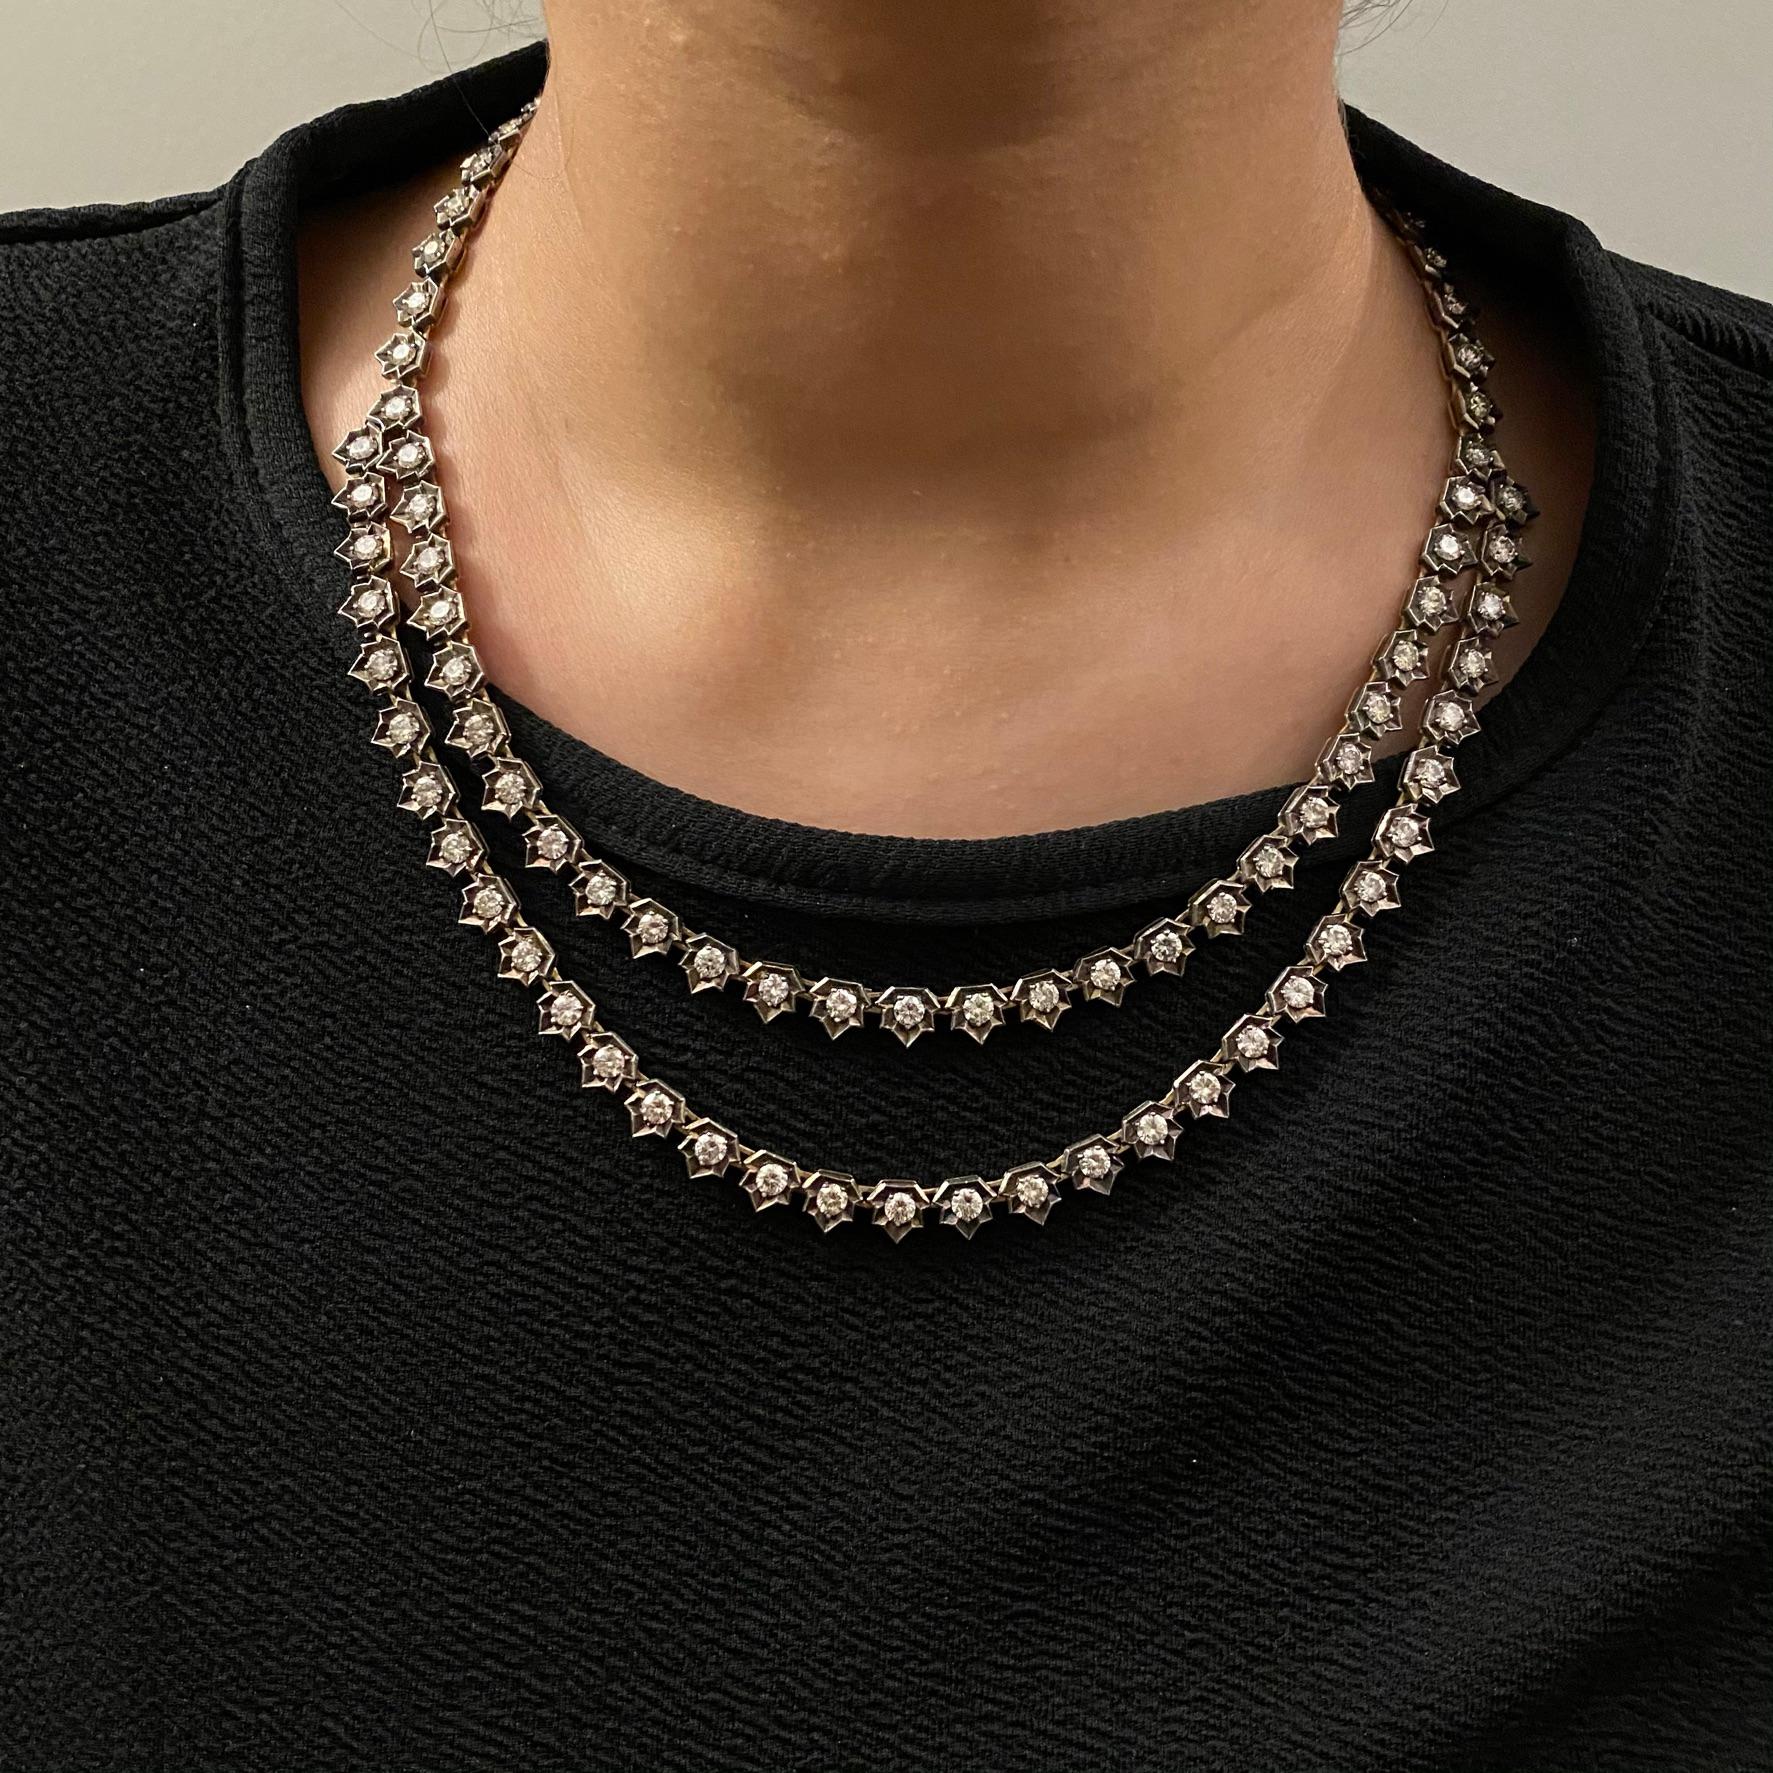 Voici notre collier double ligne de diamants anciens, une pièce intemporelle et élégante qui vous transporte dans une époque révolue d'opulence et de glamour. Ce collier exquis s'enorgueillit de 20 carats de diamants, méticuleusement sertis dans une